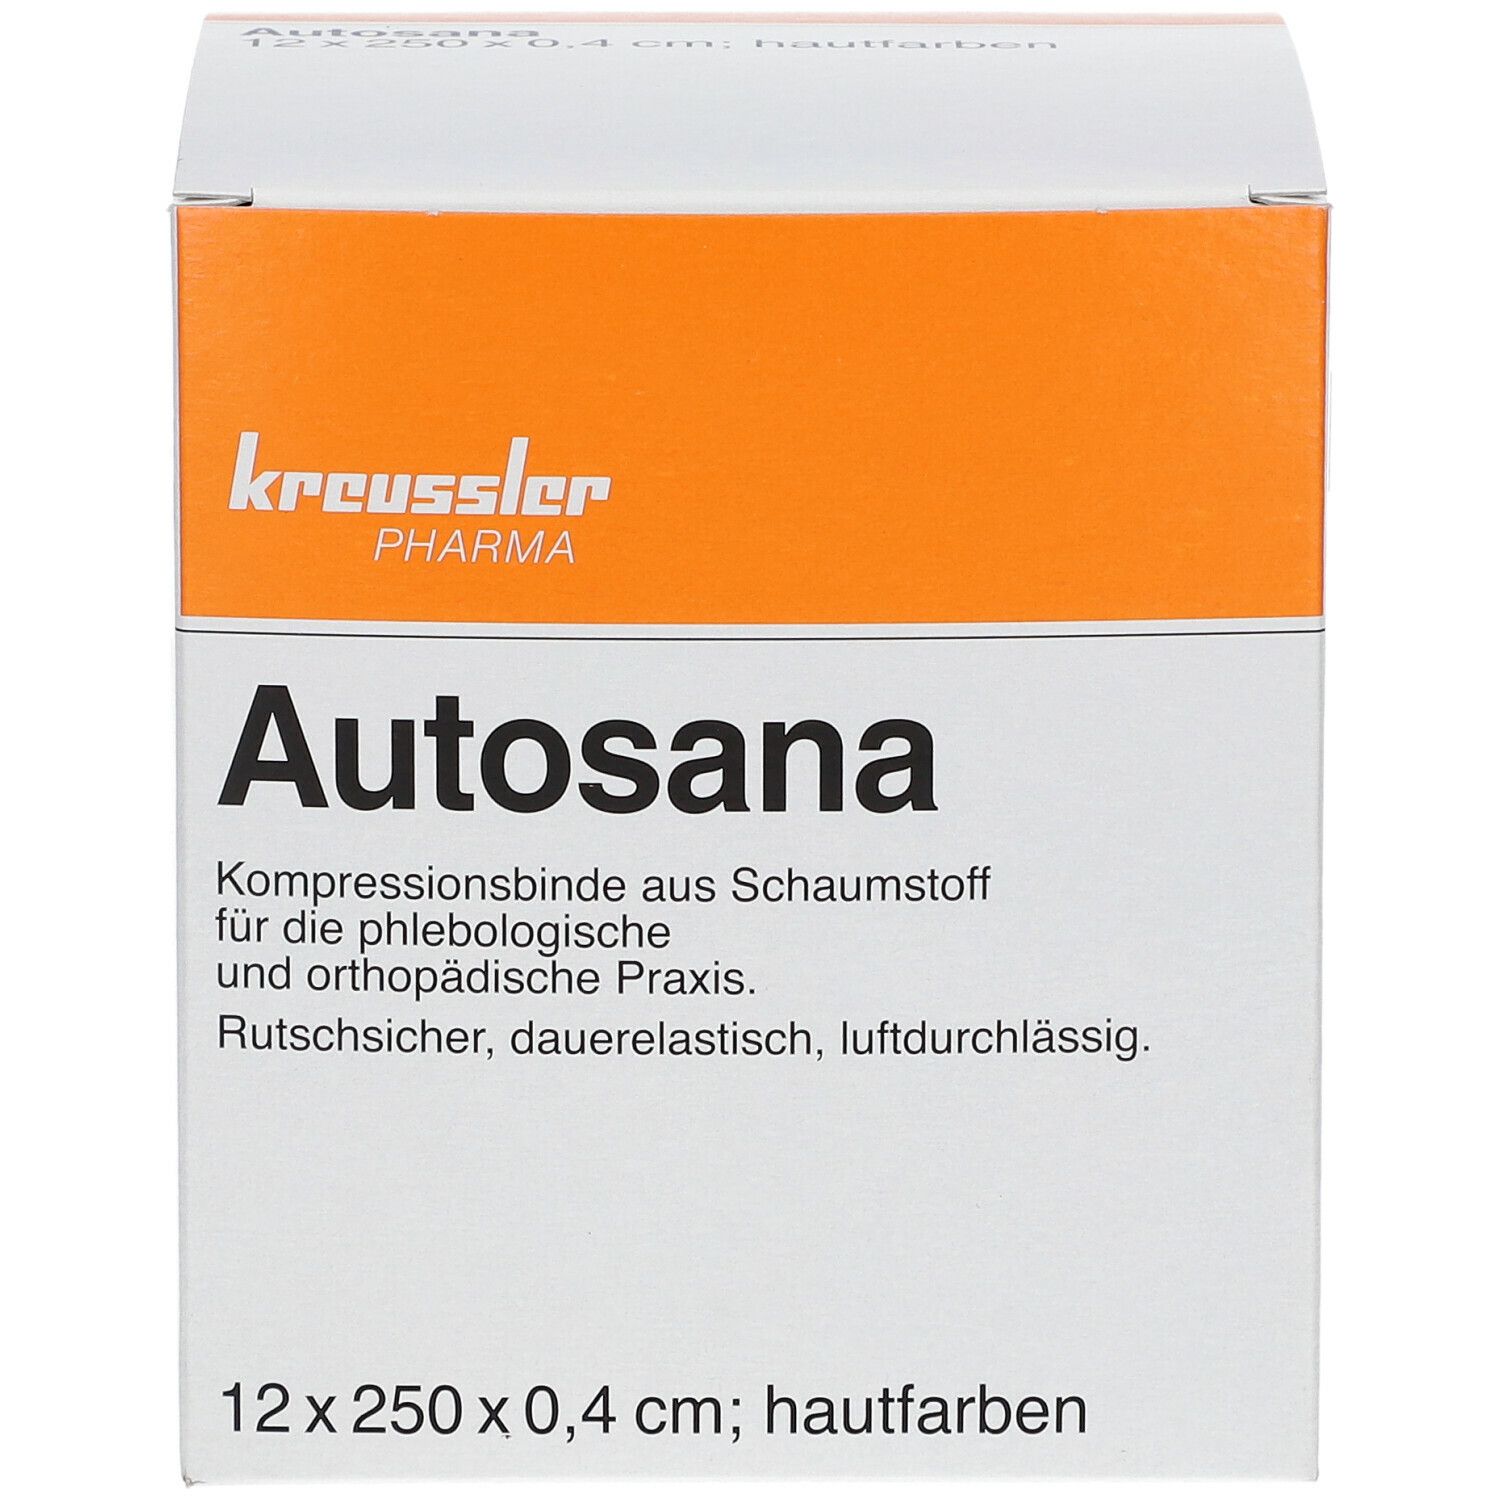 Autosana Kompressionsbinde aus Schaumstoff 12 cm x 2,5 m x 0,4 cm hautfarbend